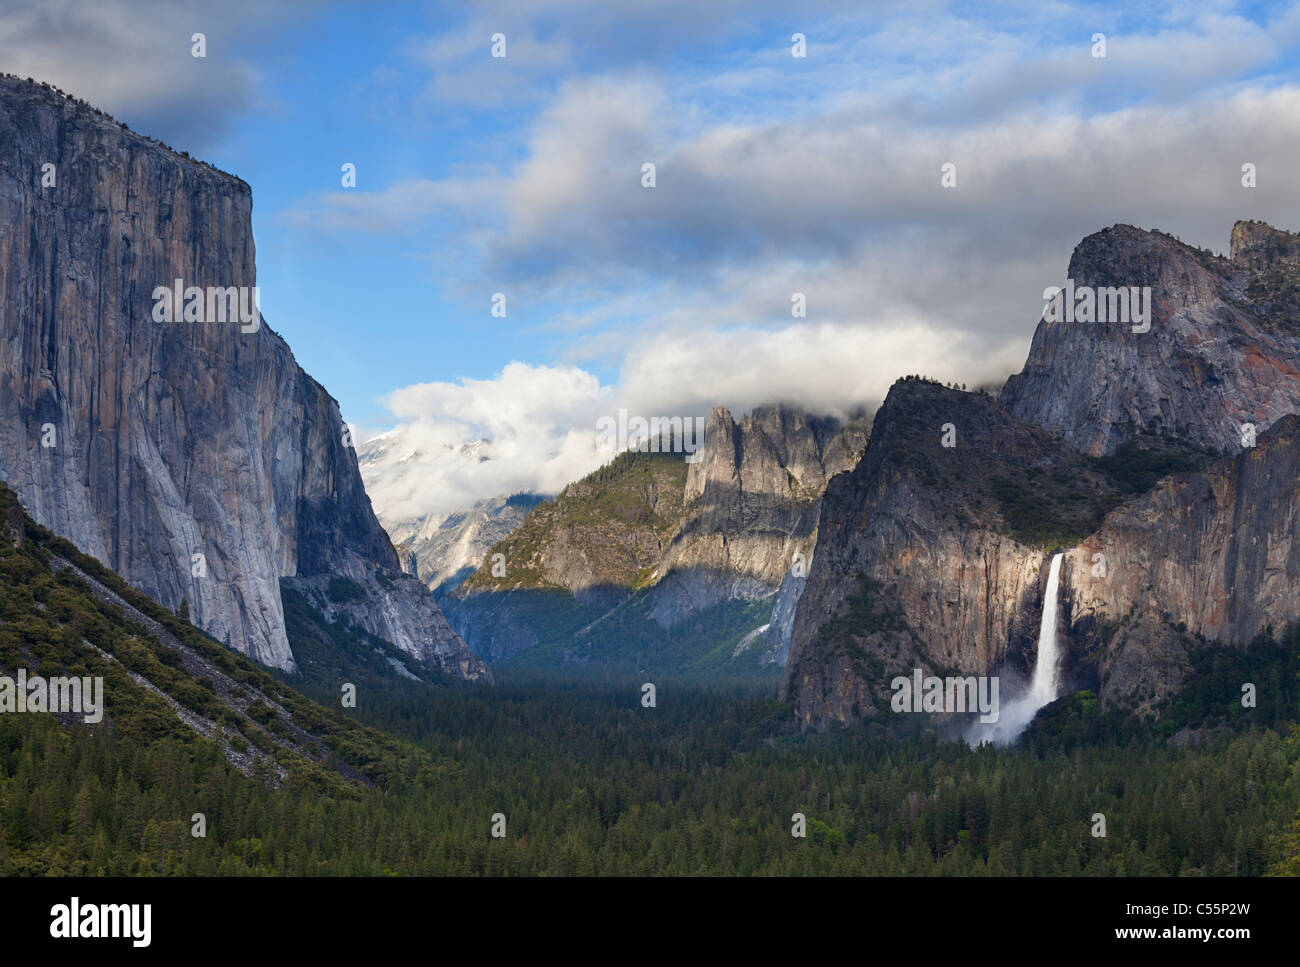 El Capitan et Bridal Veil Falls vallée de Yosemite Yosemite National Park California usa Banque D'Images